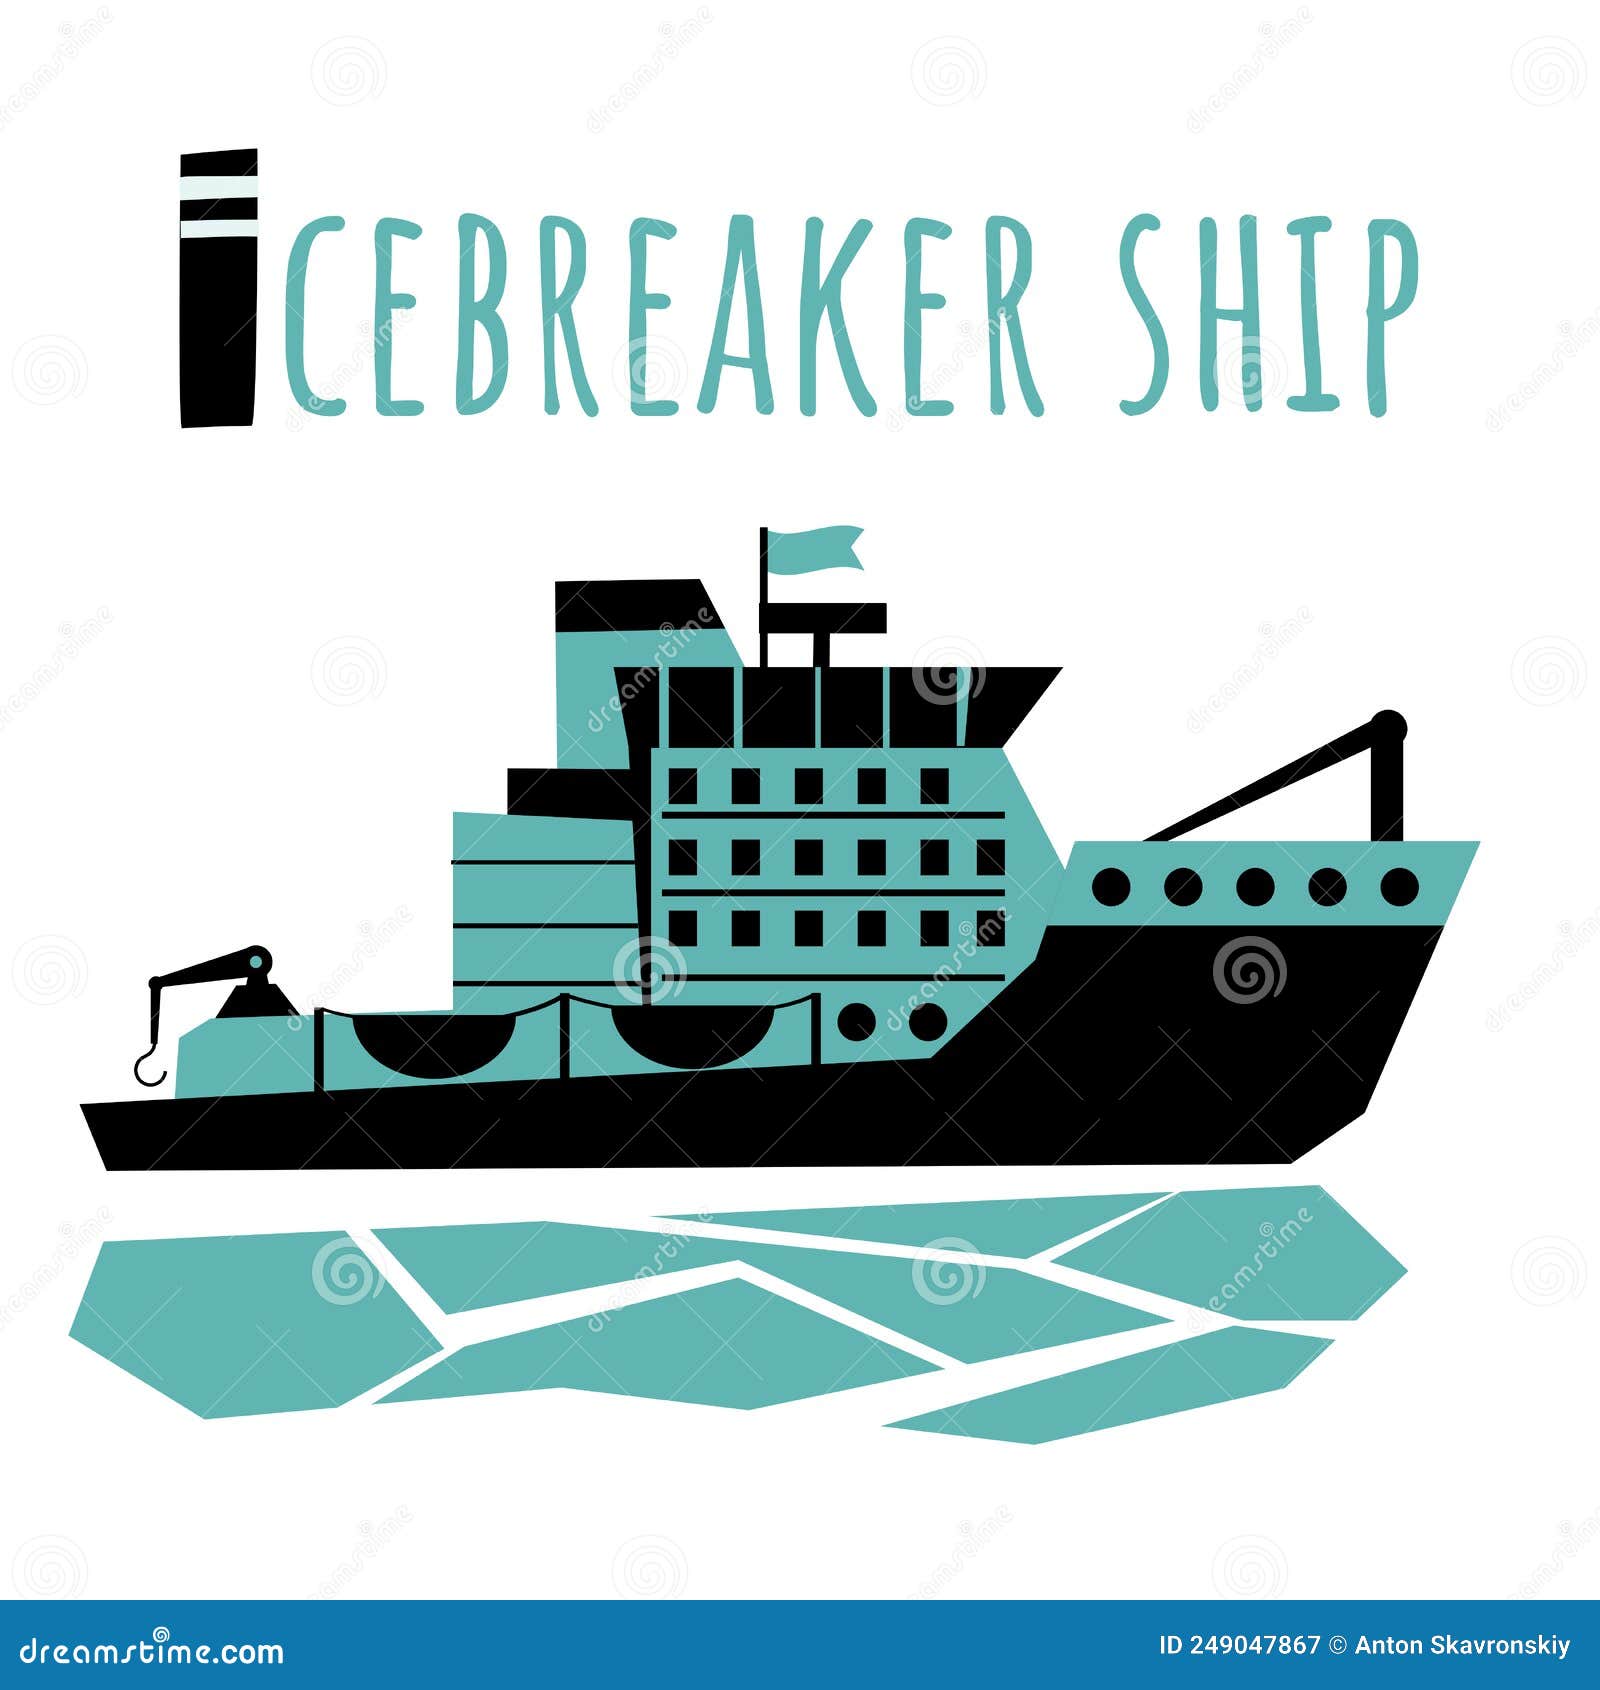 Icebreaker Ship for Children ABC Poster Stock Vector